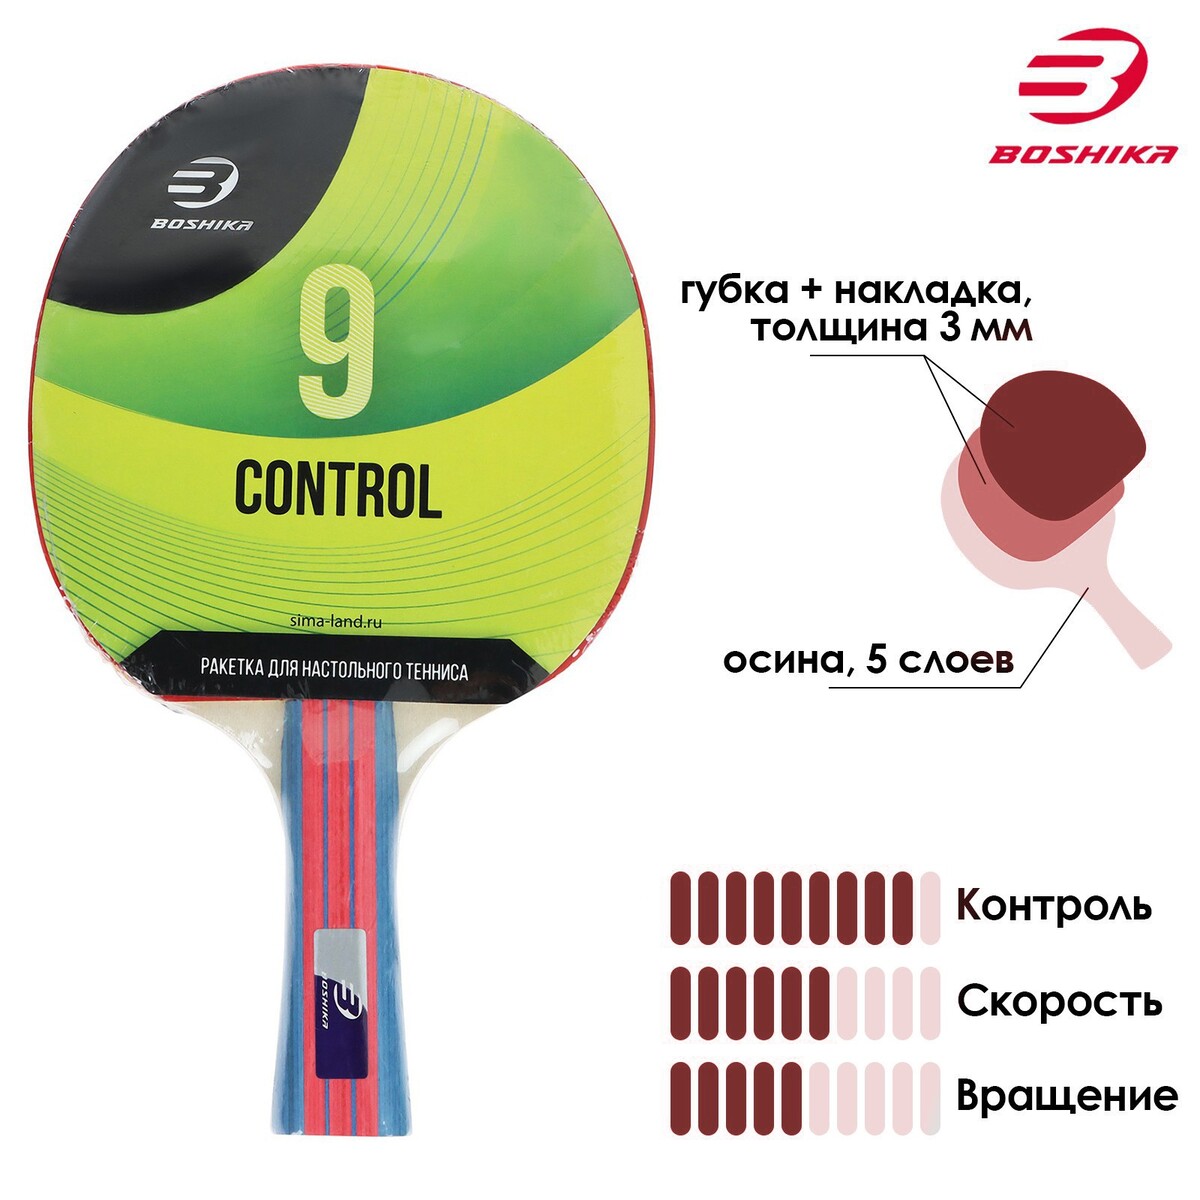 Ракетка для настольного тенниса boshika control 9, для начинающих, губка 1,8 мм, коническая ручка ракетка для настольного тенниса double fish ck 107